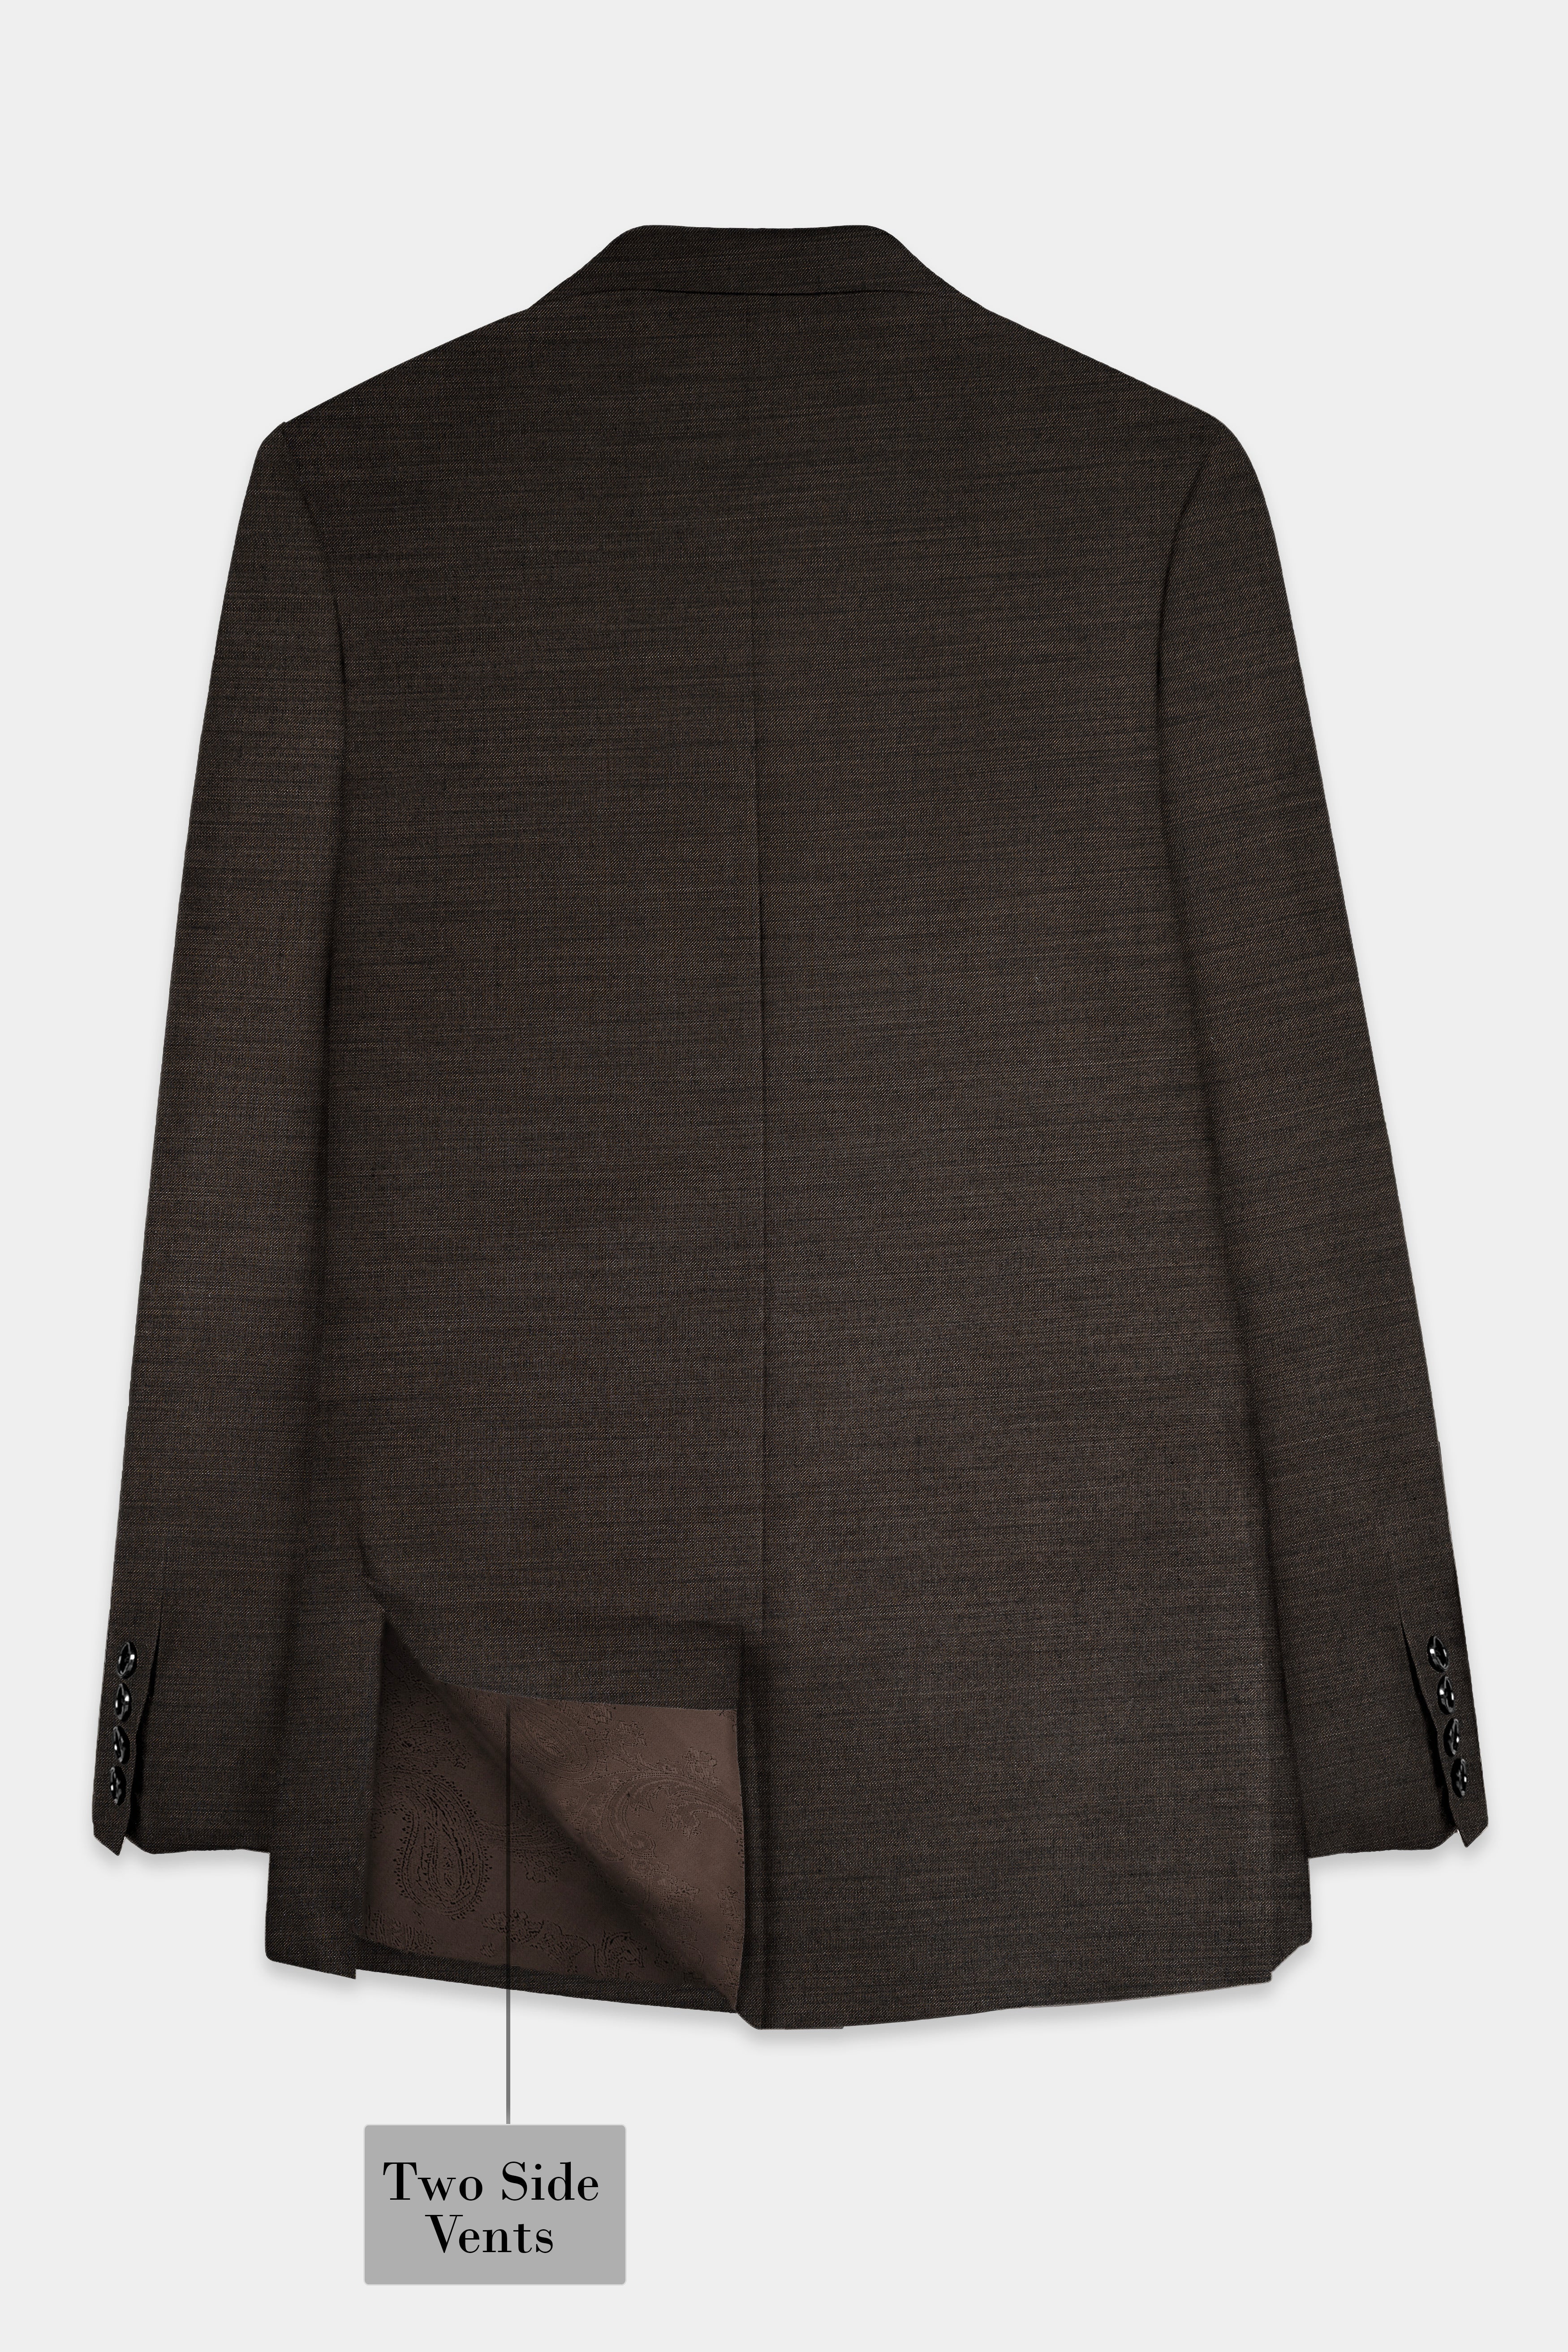 Eclipse Brown Textured Wool Blend Blazer